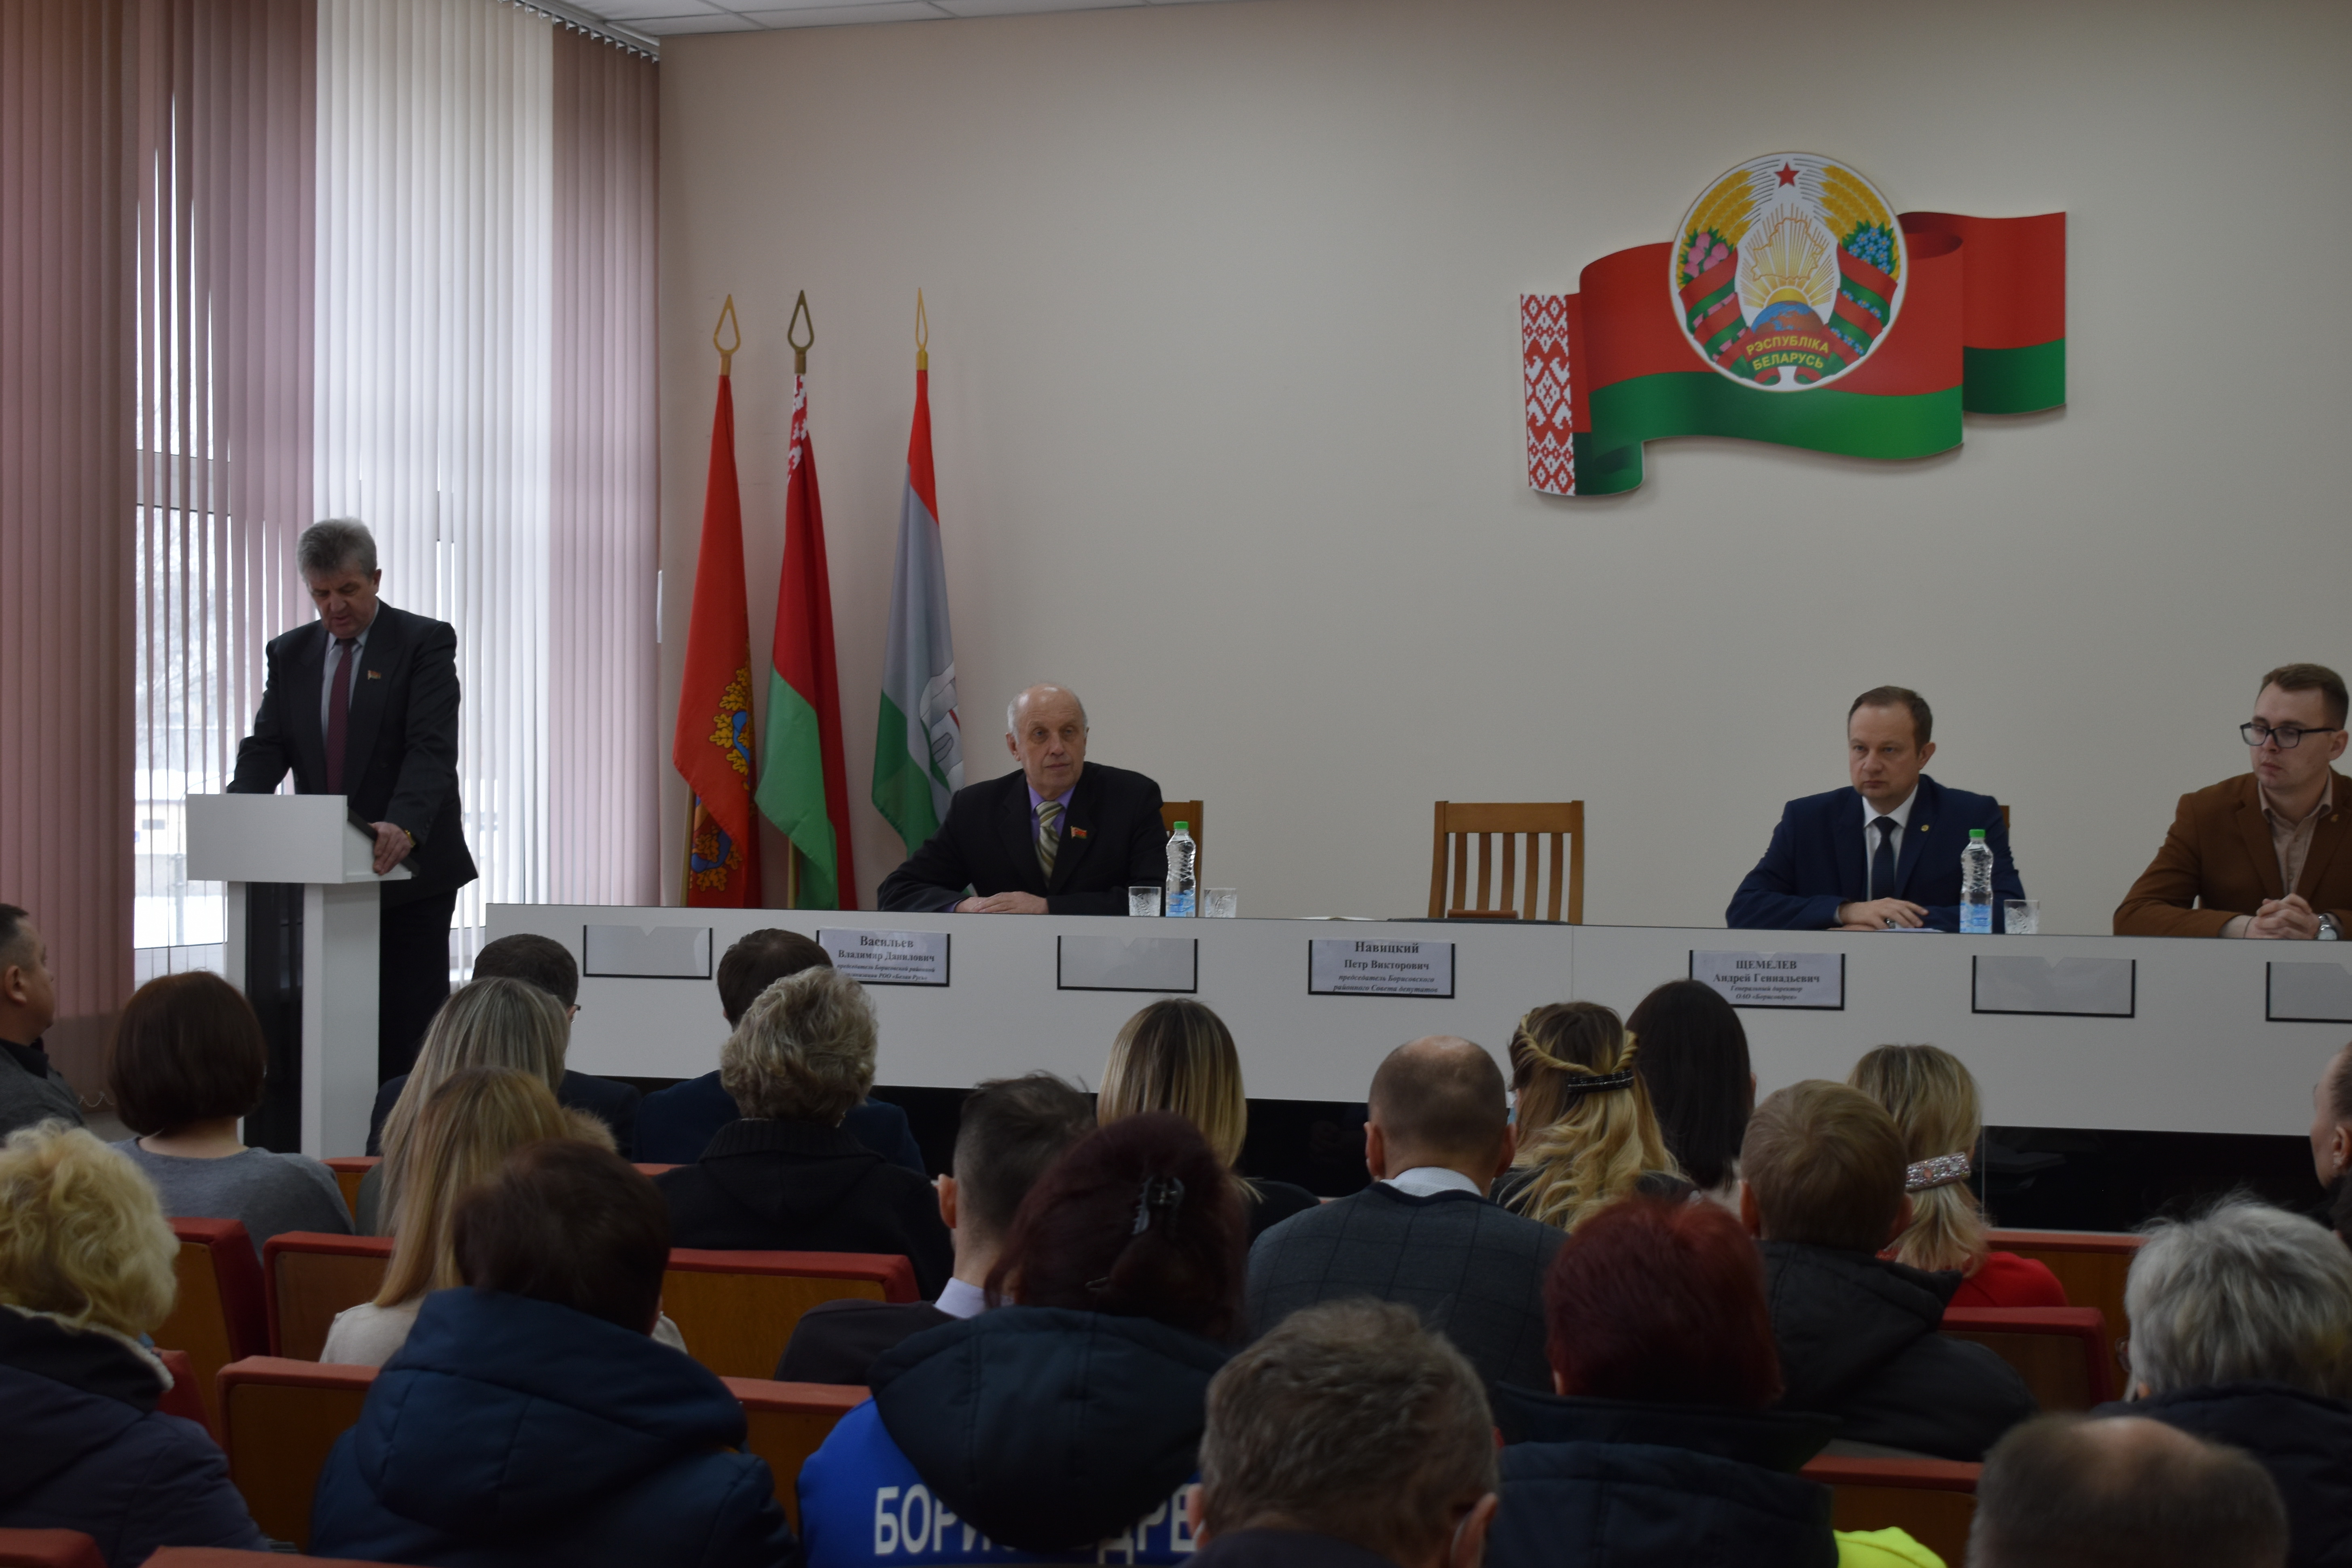 Завершается обсуждение Проекта изменений и дополнений Конституции Республики Беларусь